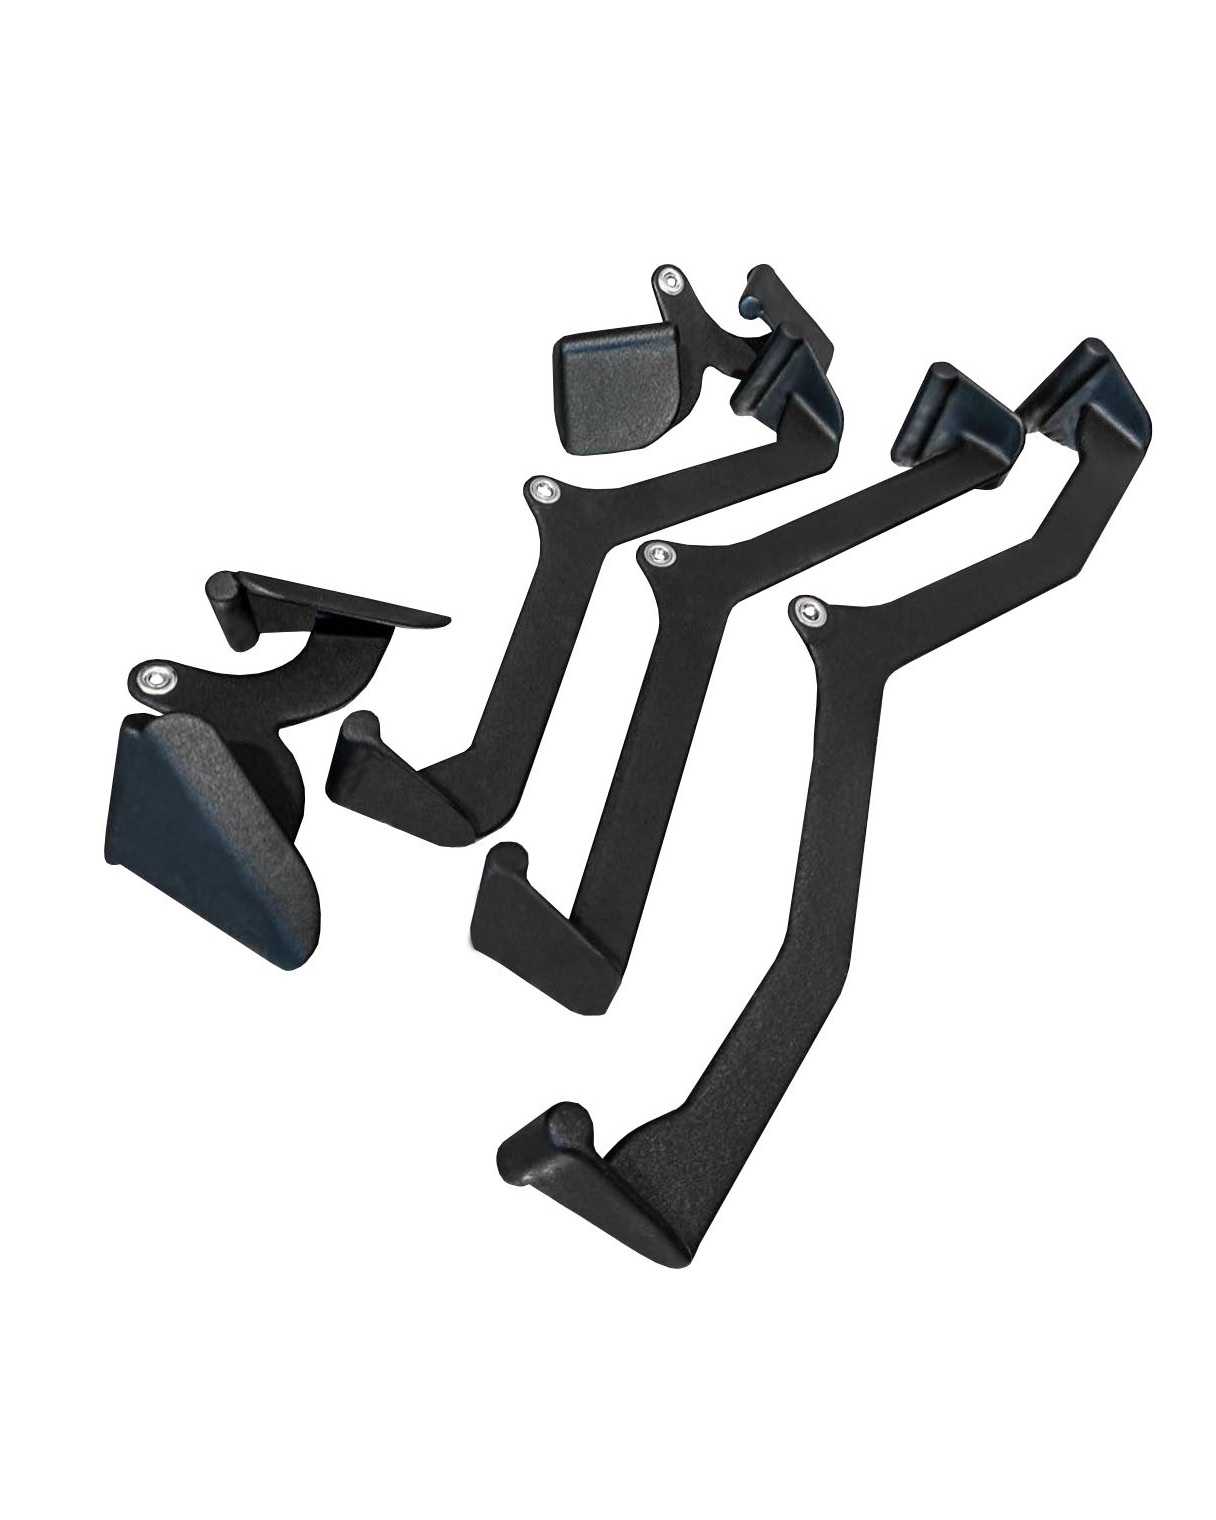 W10 Multi Grip Handle Set  Gym Steel - Professional Gym Equipment